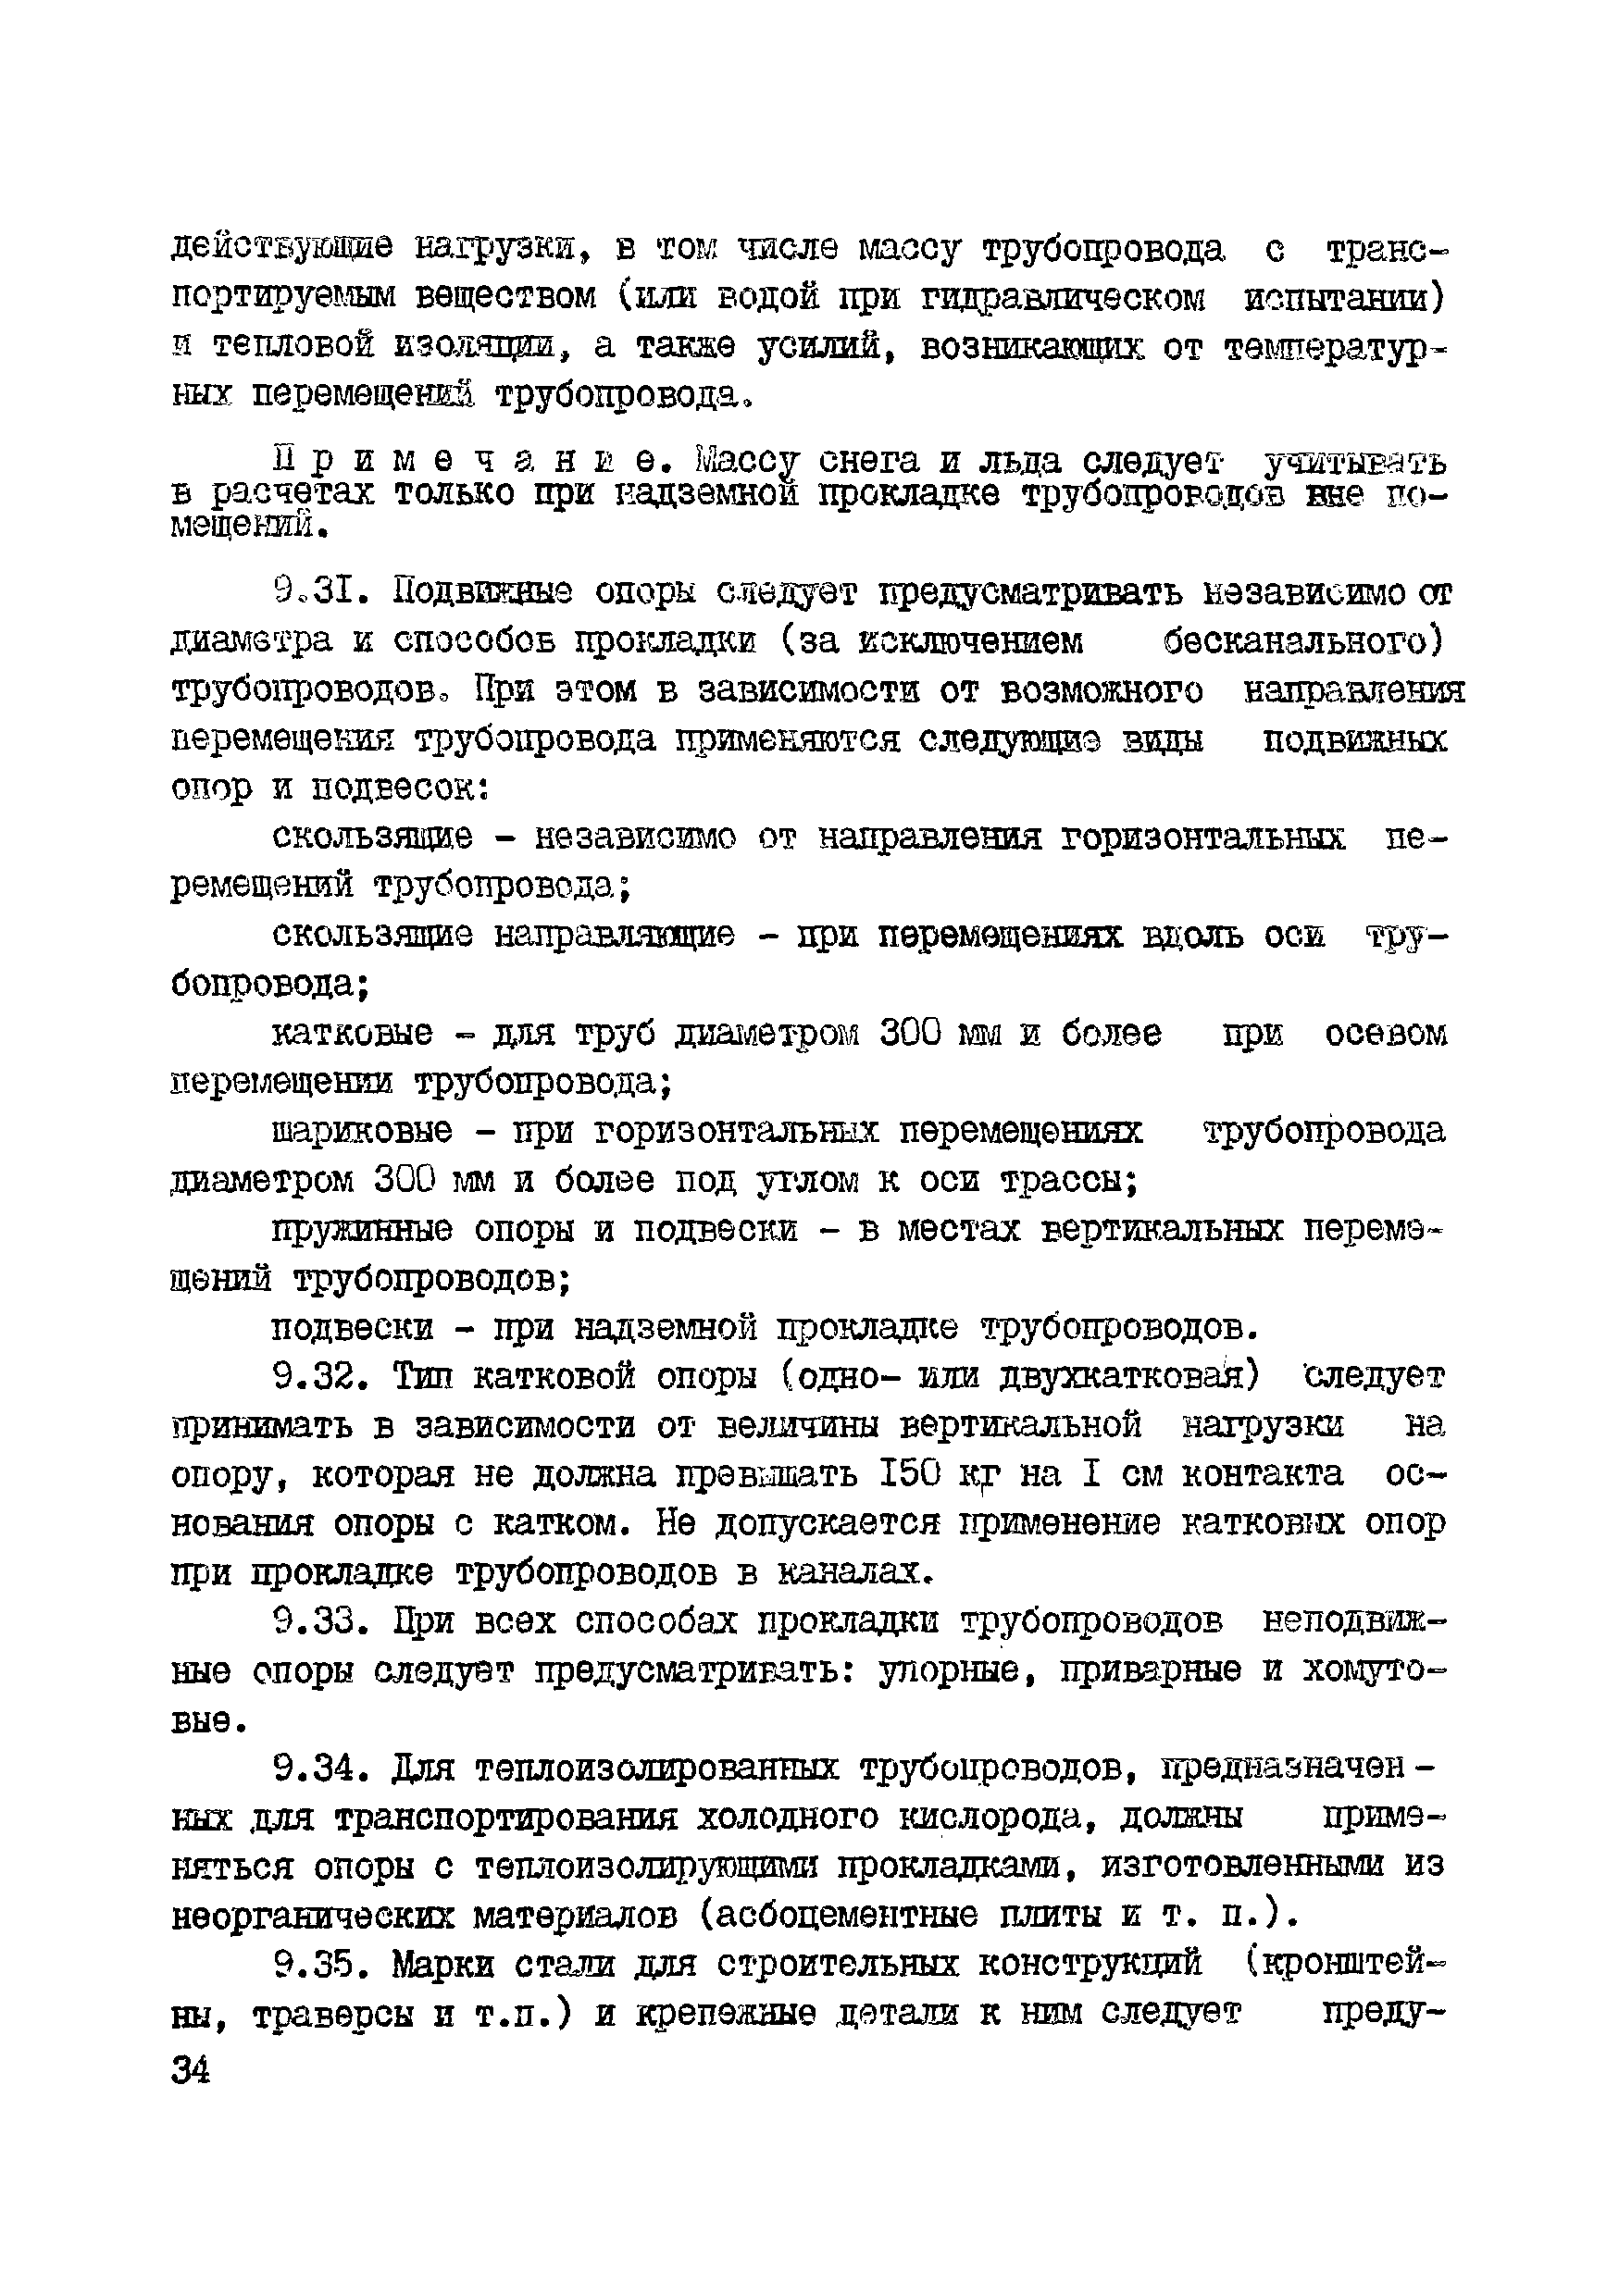 ВСН 10-83/Минхимпром